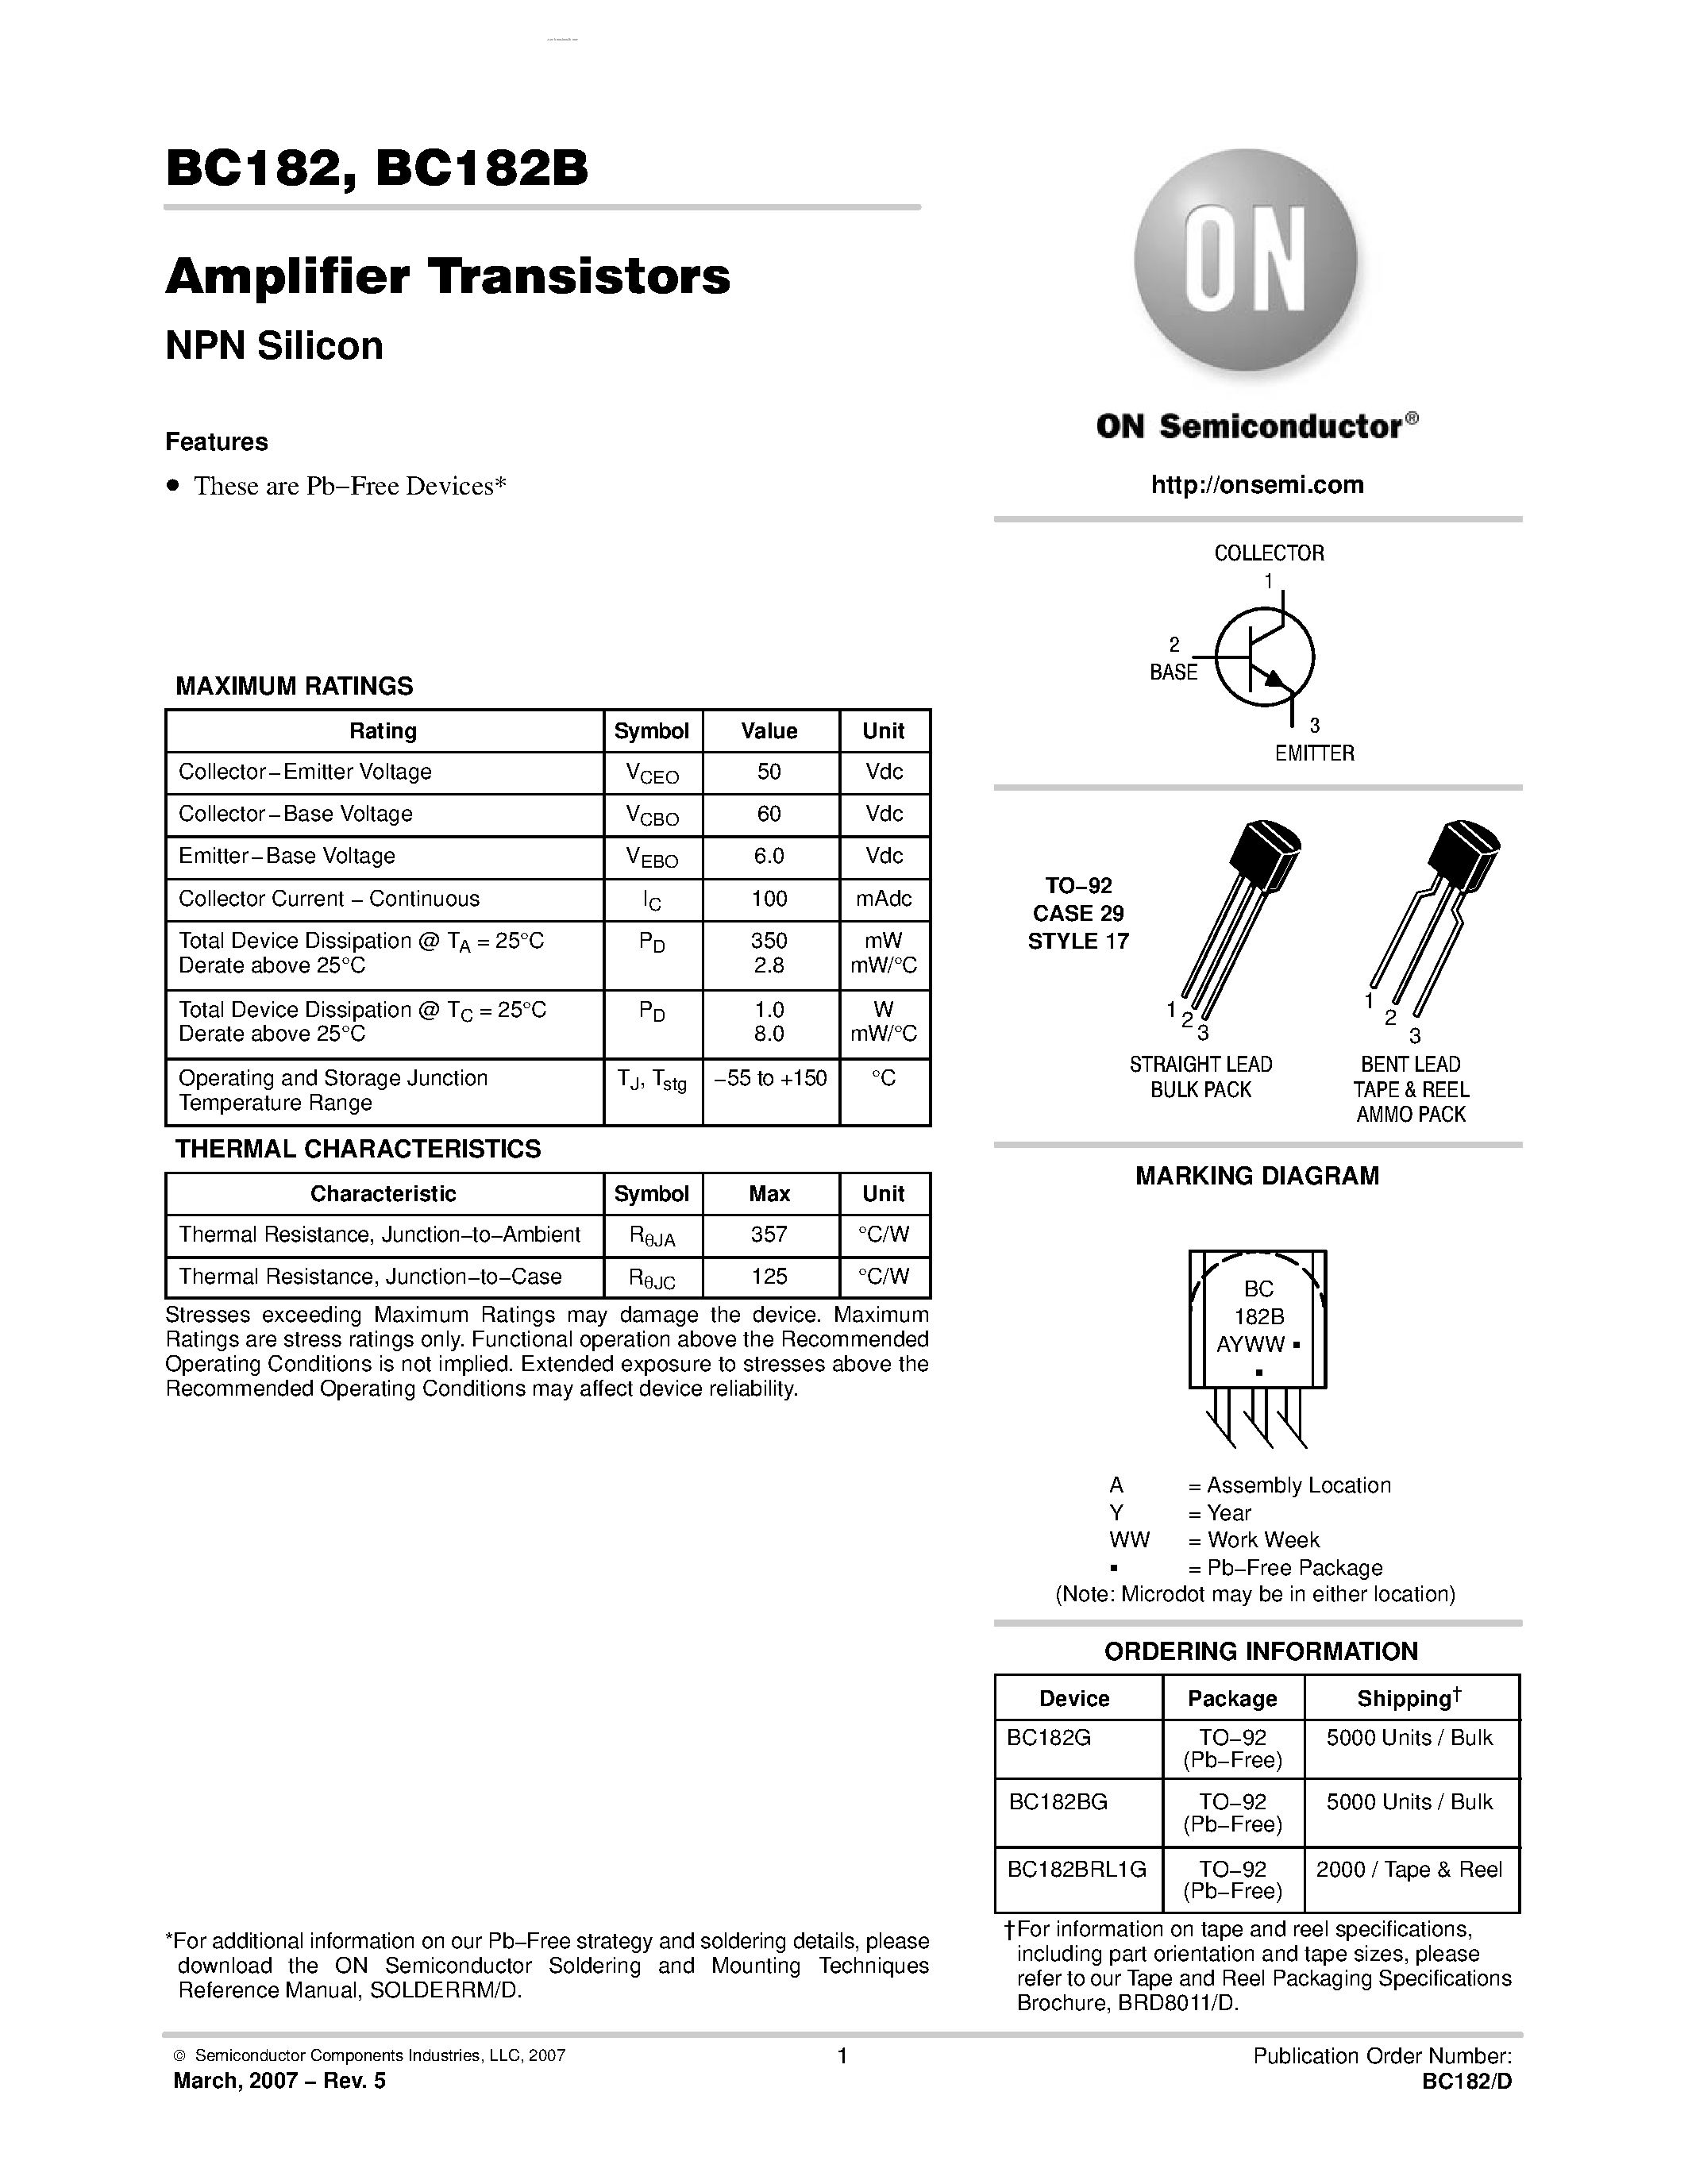 Datasheet BC182B - Amplifier Transistor page 1